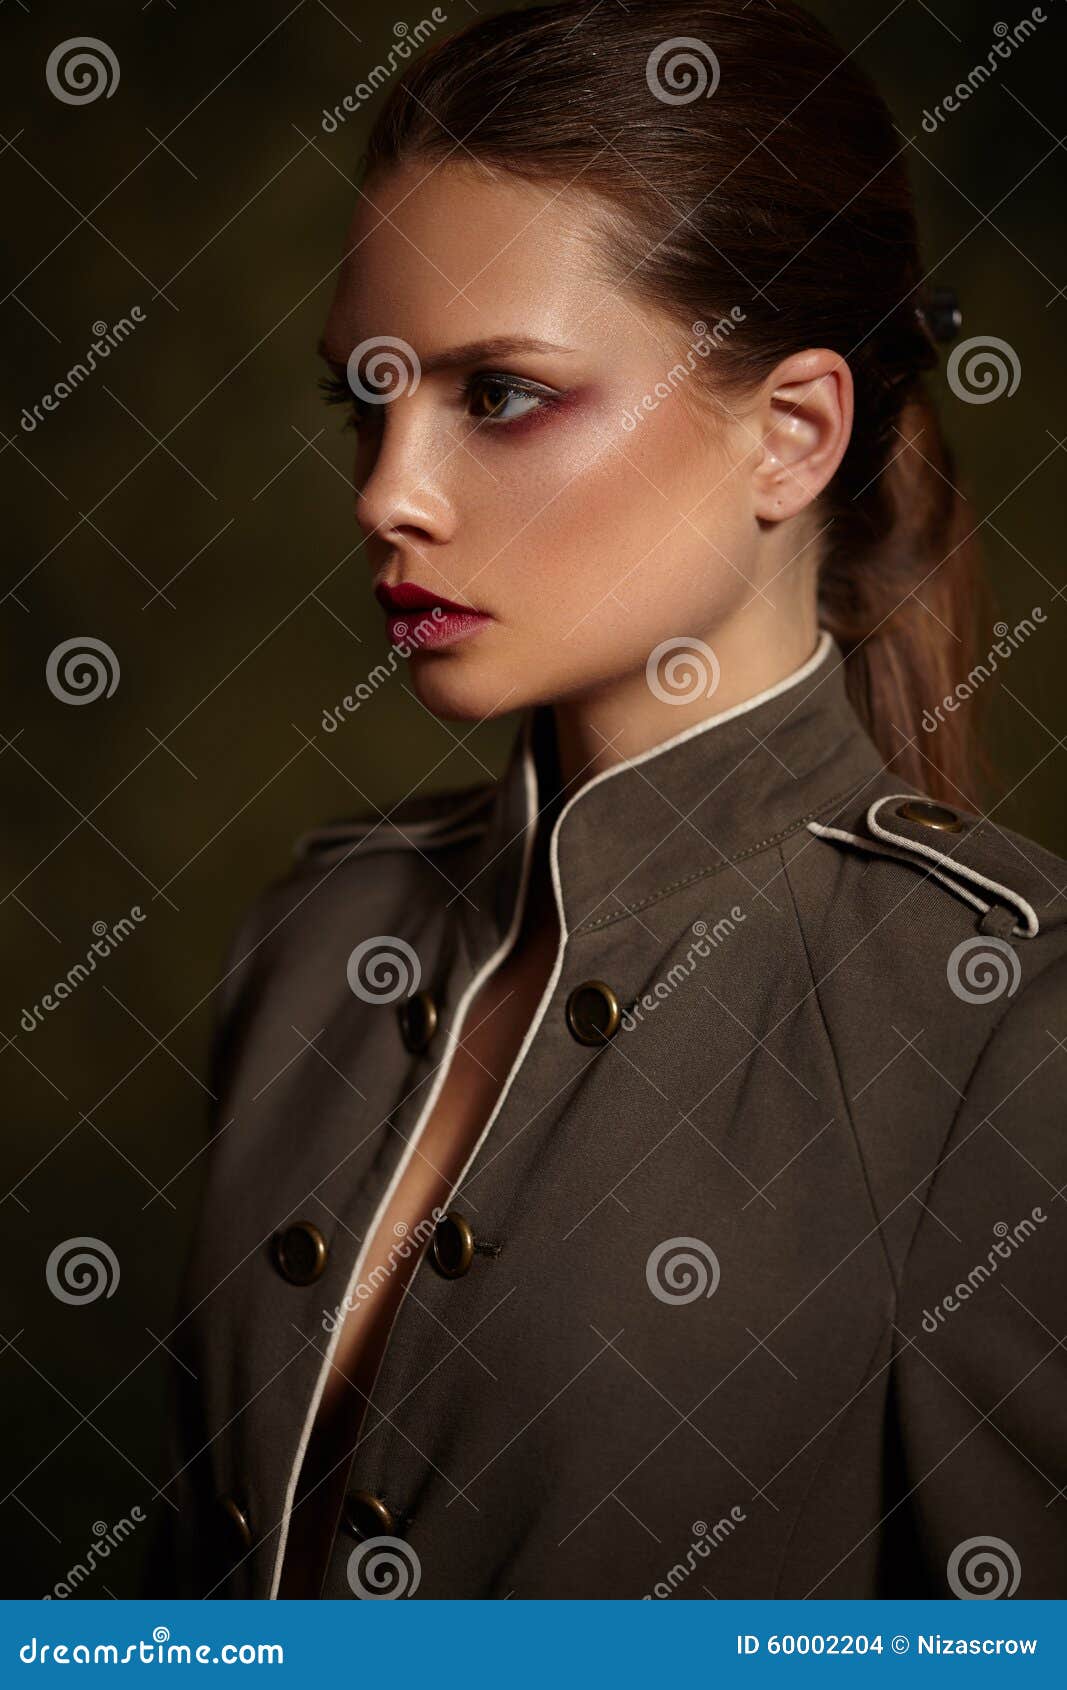 Όμορφο κορίτσι στο μοντέρνο παλτό στο σκοτεινό υπόβαθρο. Όμορφο κορίτσι σε ένα μοντέρνο παλτό σε ένα σκοτεινό υπόβαθρο Φωτεινά κόκκινα χείλια